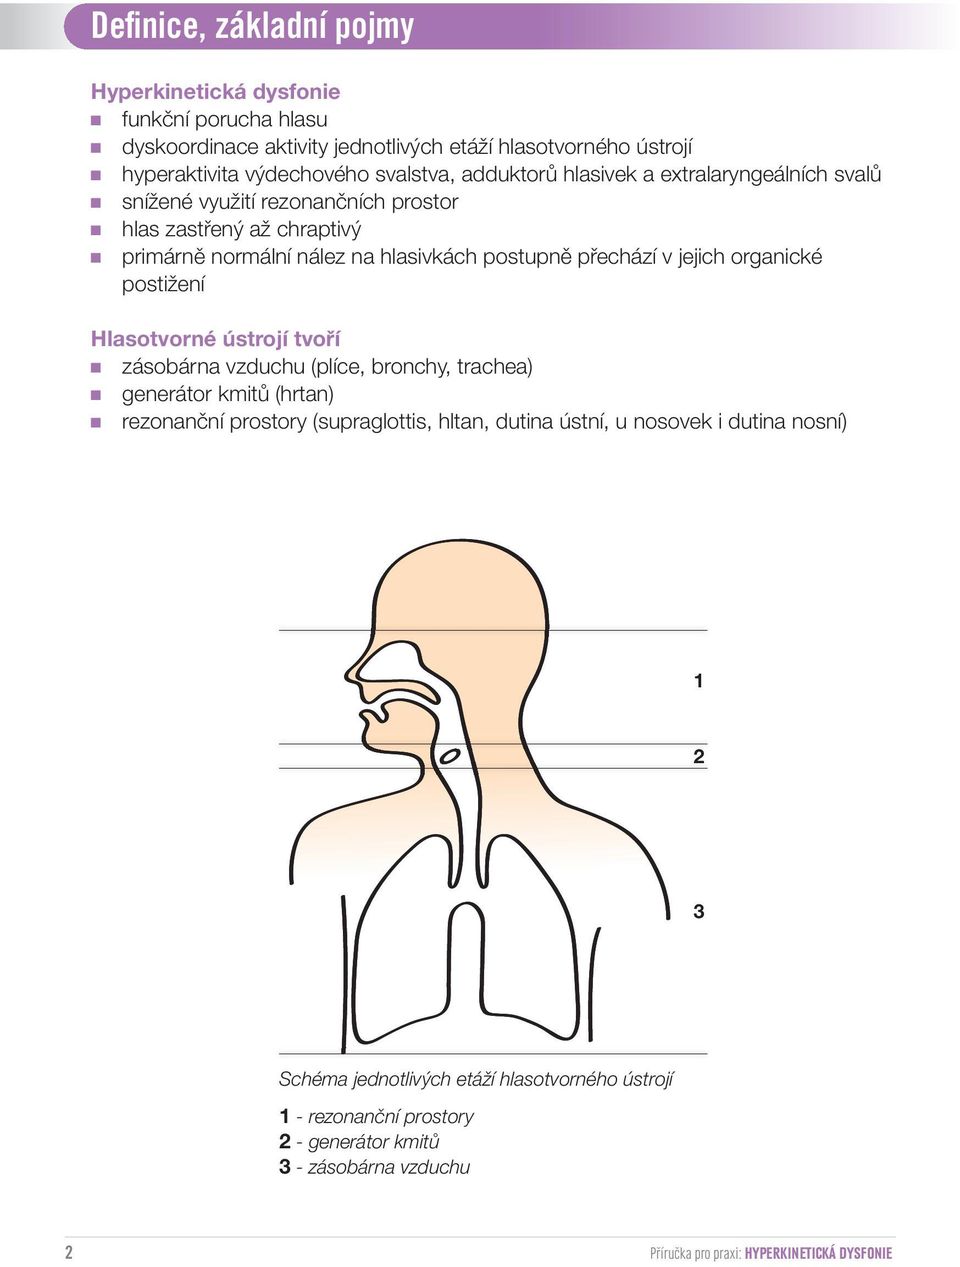 organické postižení Hlasotvorné ústrojí tvoří zásobárna vzduchu (plíce, bronchy, trachea) generátor kmitů (hrtan) rezonanční prostory (supraglottis, hltan, dutina ústní, u